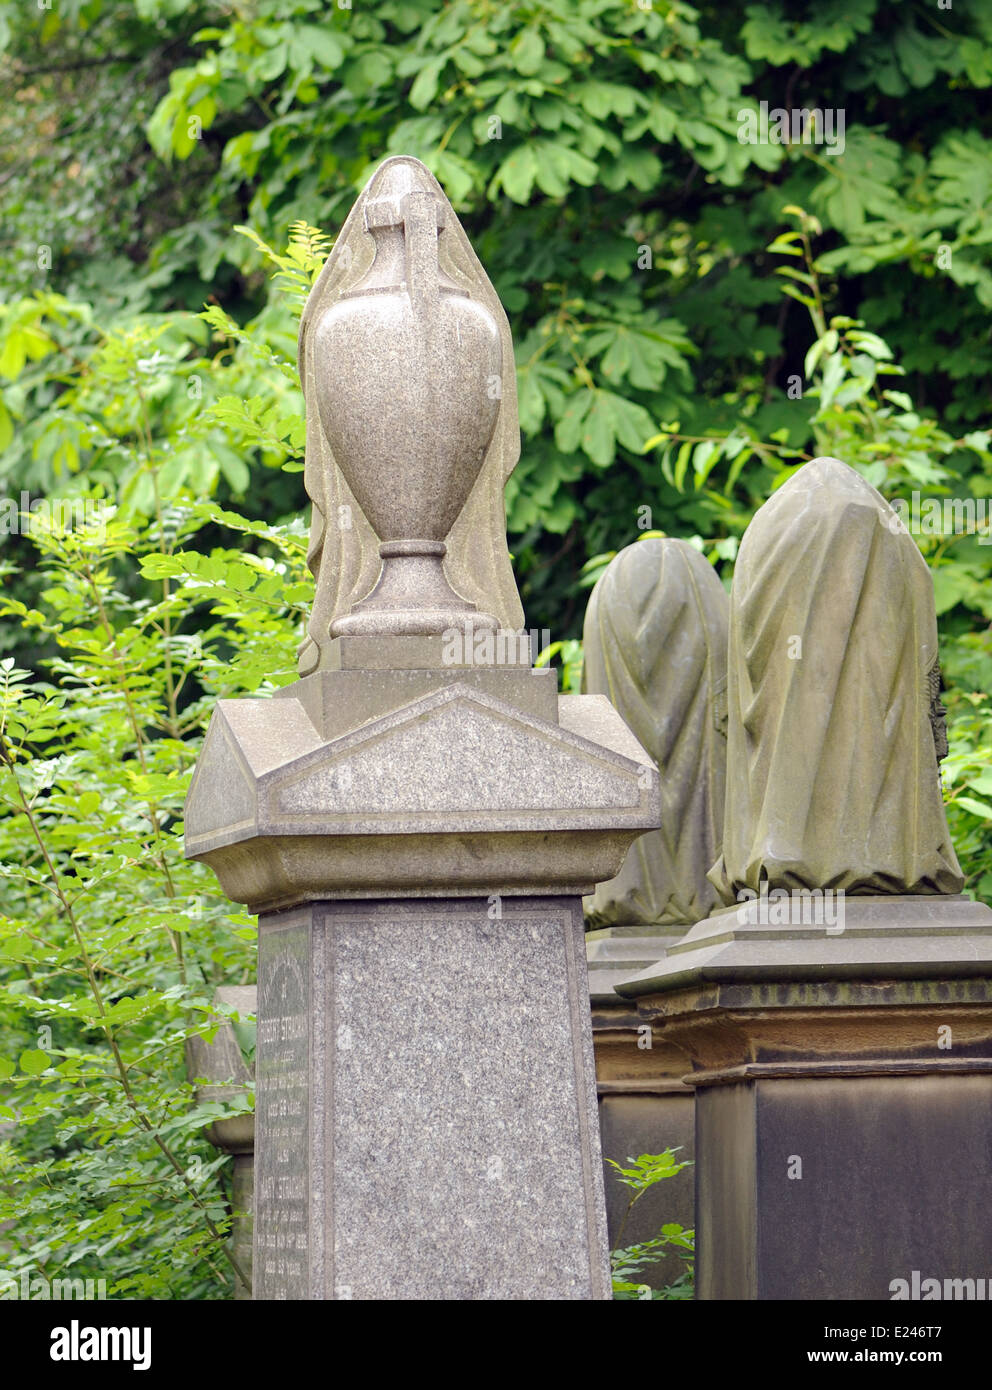 Ein verschleierter Urn markiert ein Grab auf einem Friedhof. Leeds, UK 10 Jul 13 Stockfoto